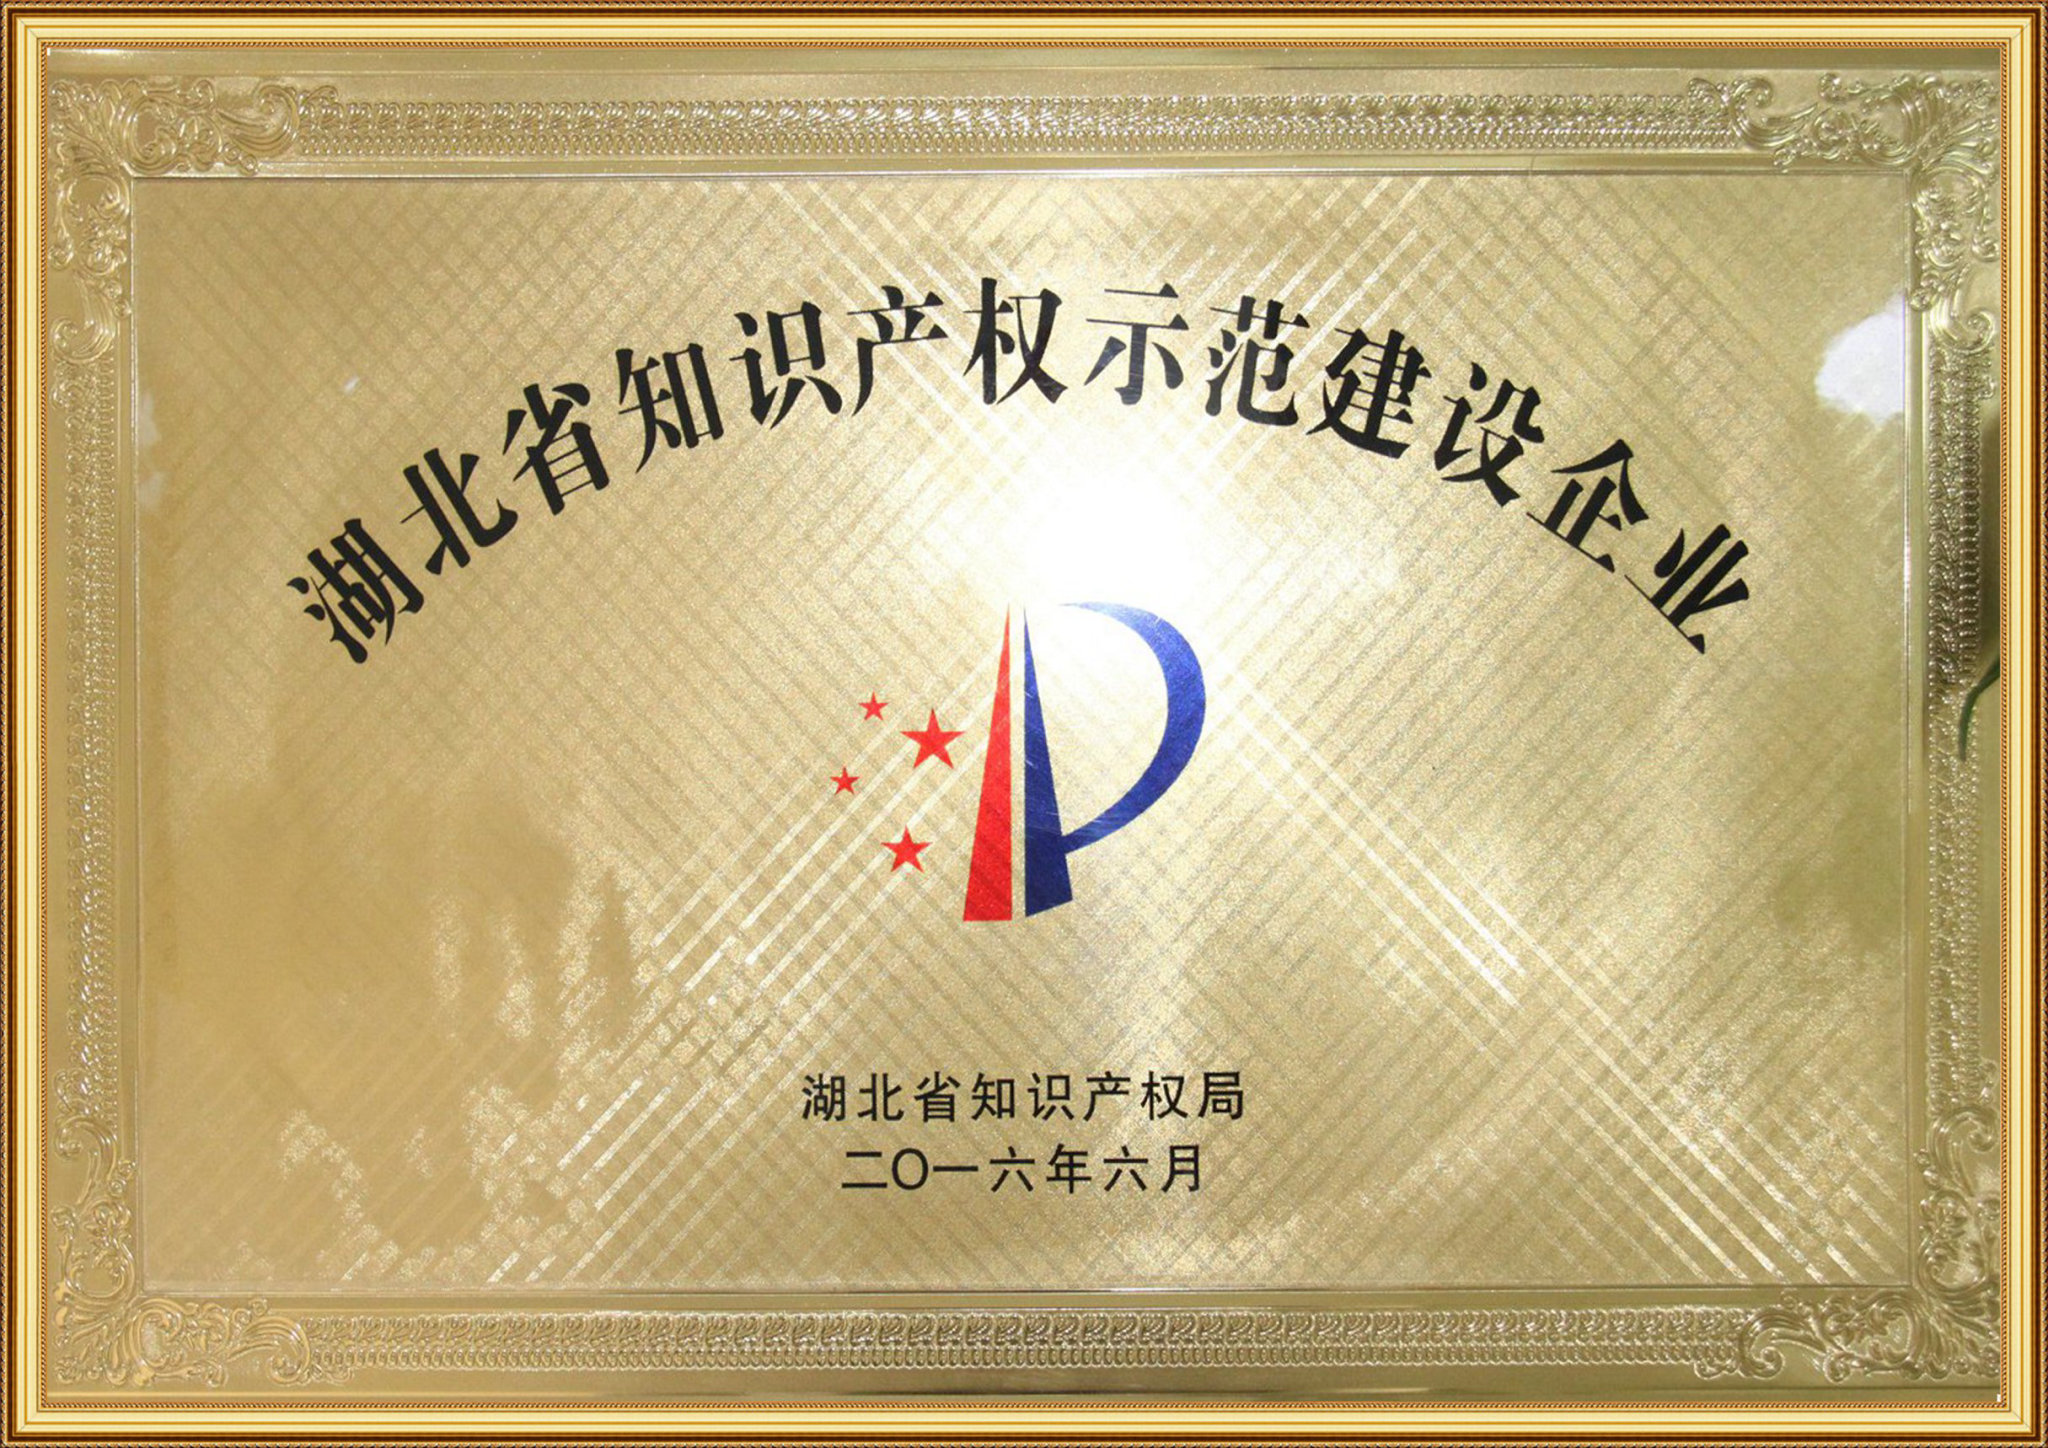 2016年被评为:“湖北省知识产权示范建设企业”